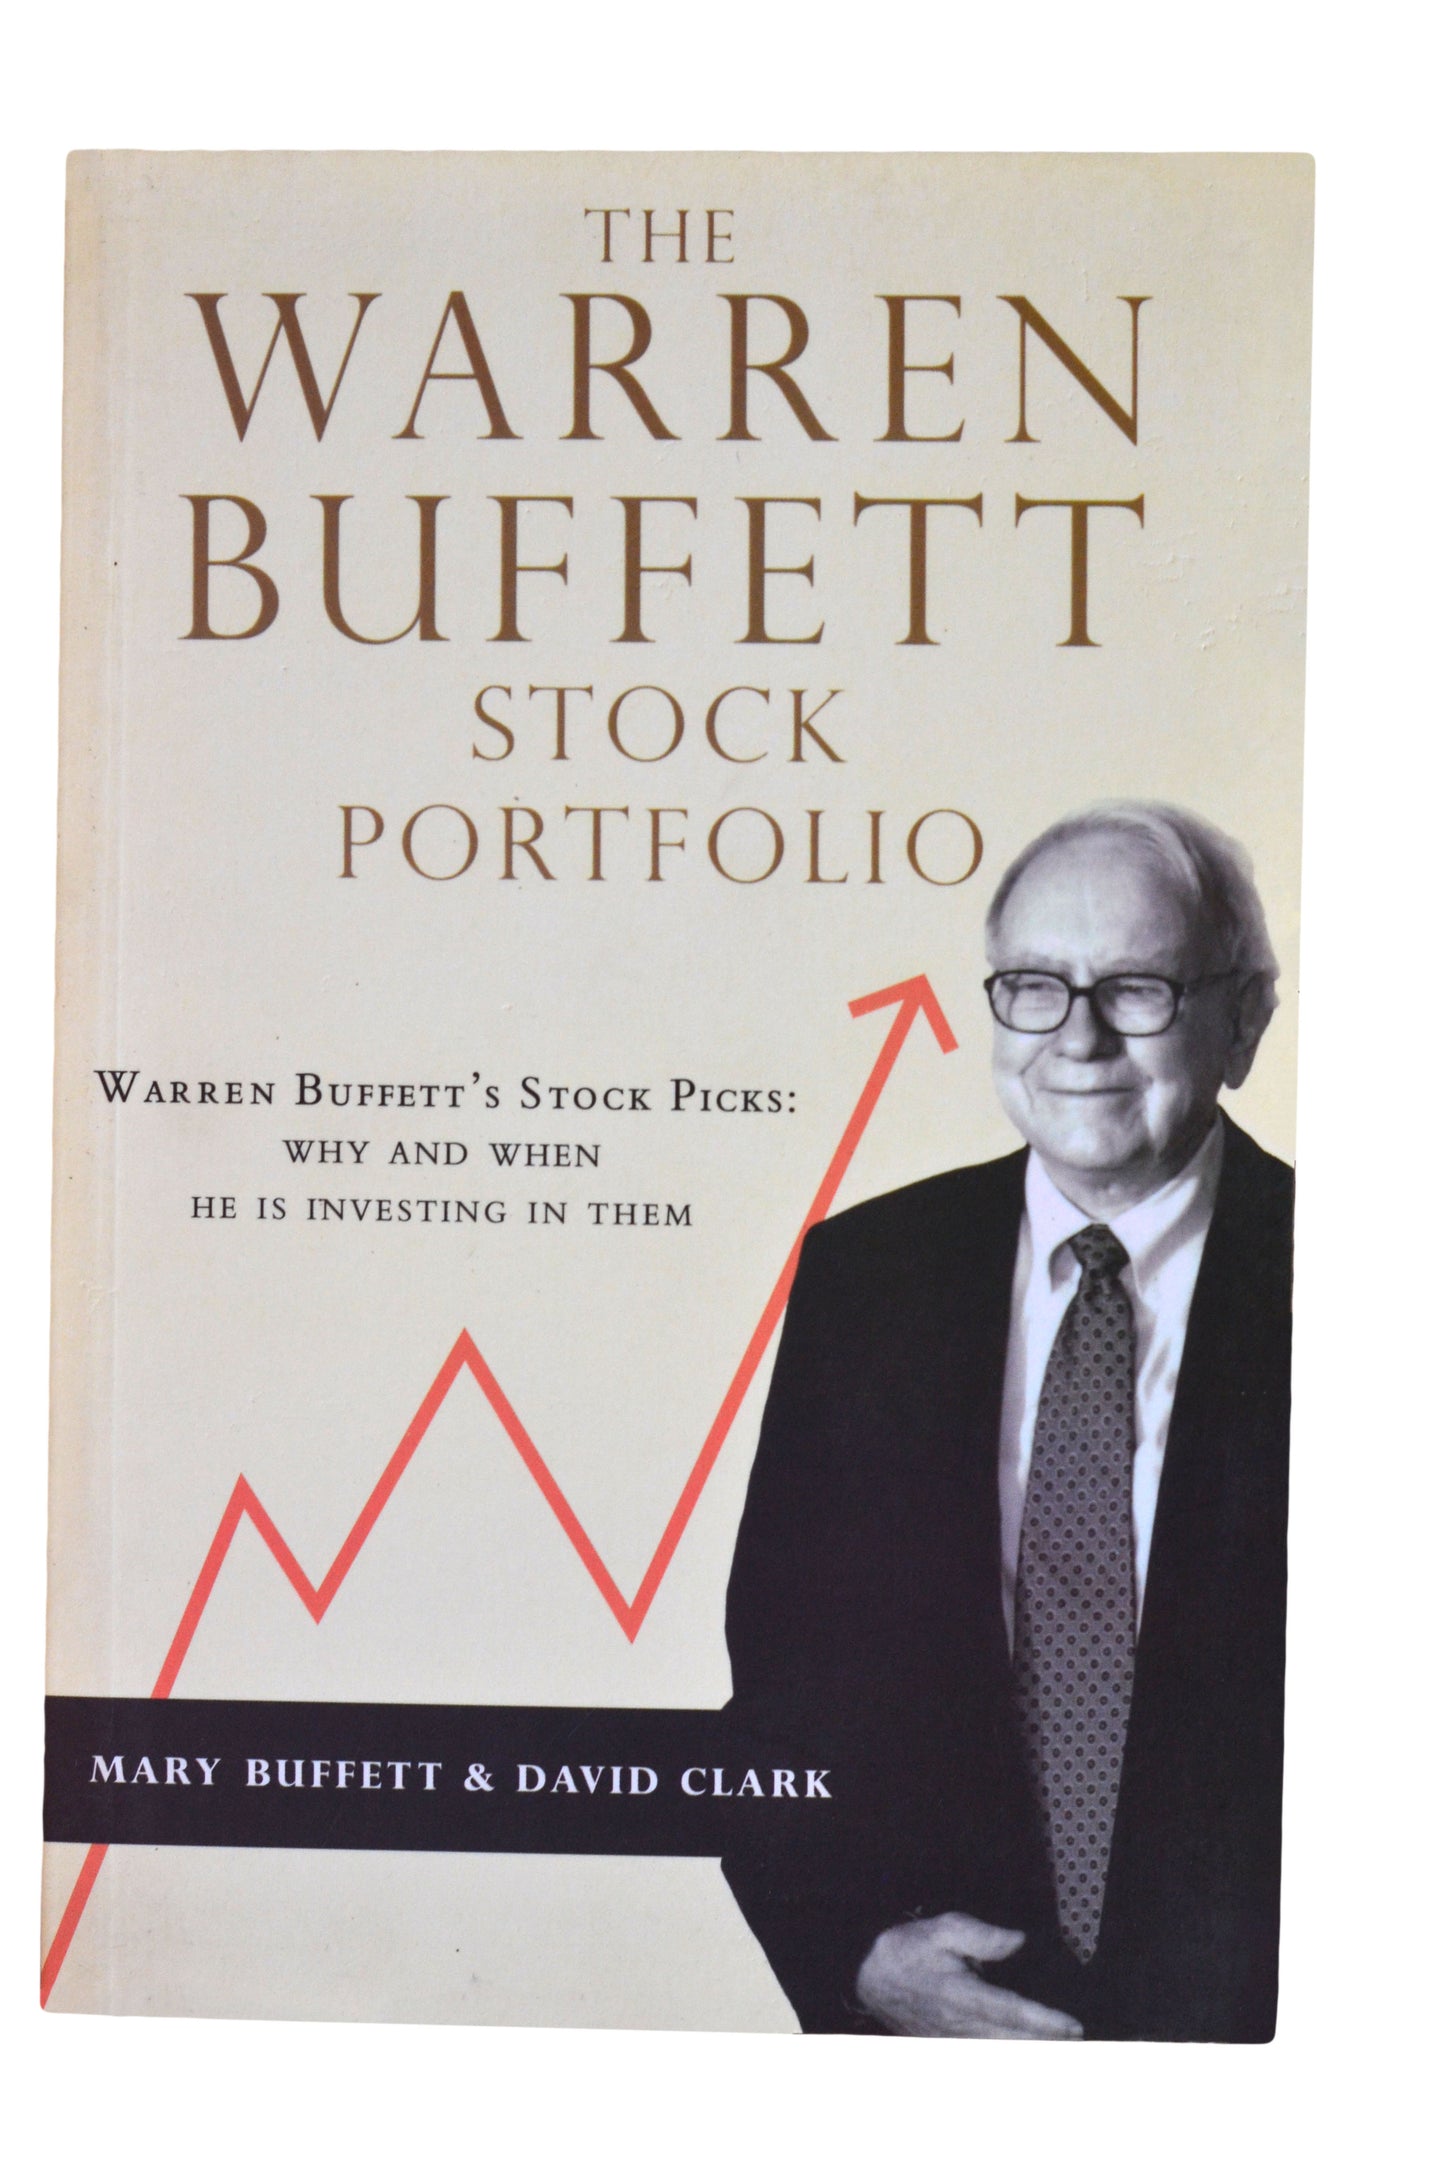 THE WARREN BUFFET STOCK PORTFOLIO